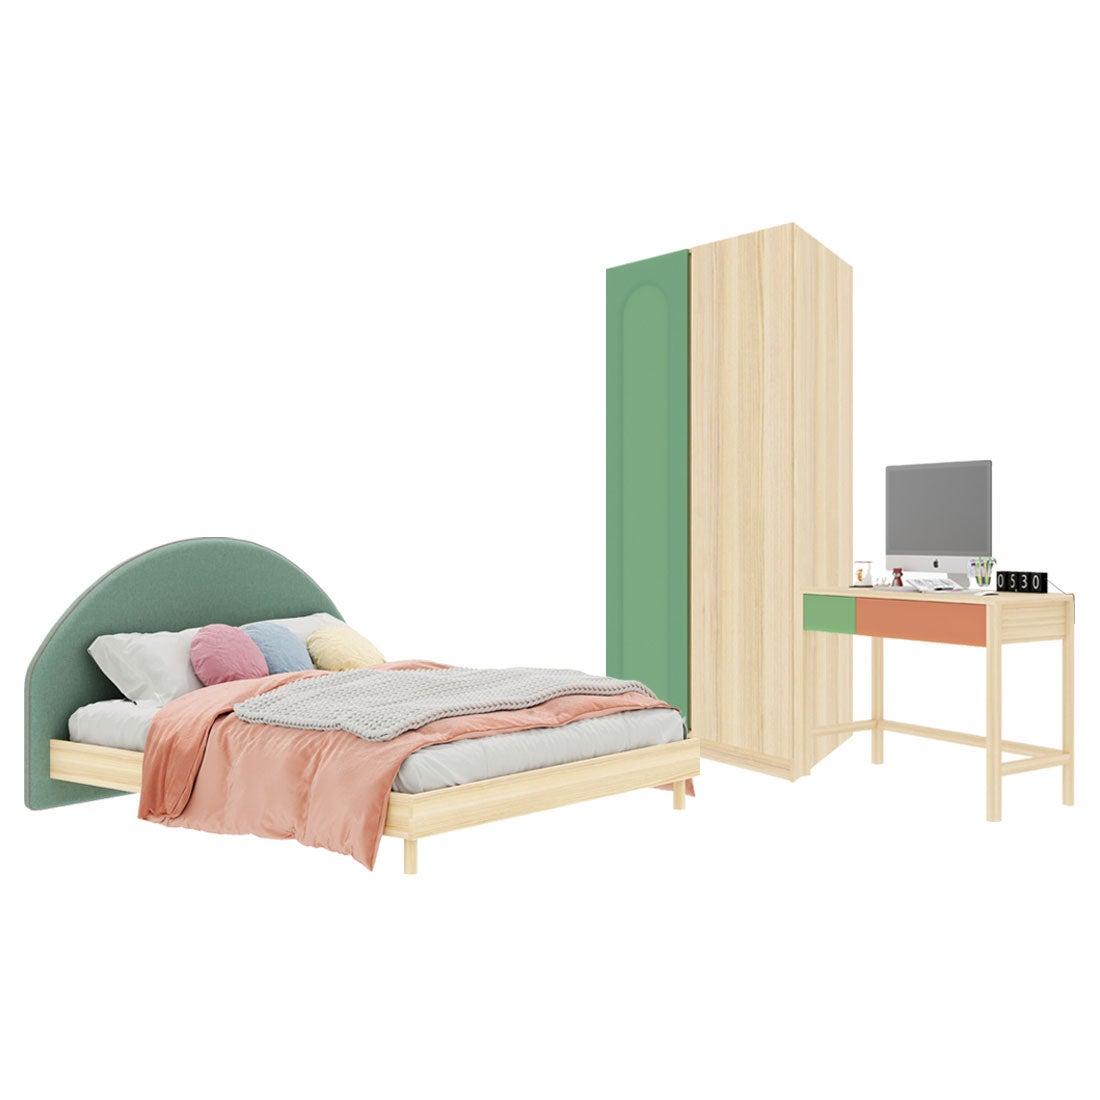 ชุดห้องนอน ขนาด 6 ฟุต-เบาะเขียว รุ่น Bingsoo & ตู้เสื้อผ้า 90 ซม. สีเขียว1